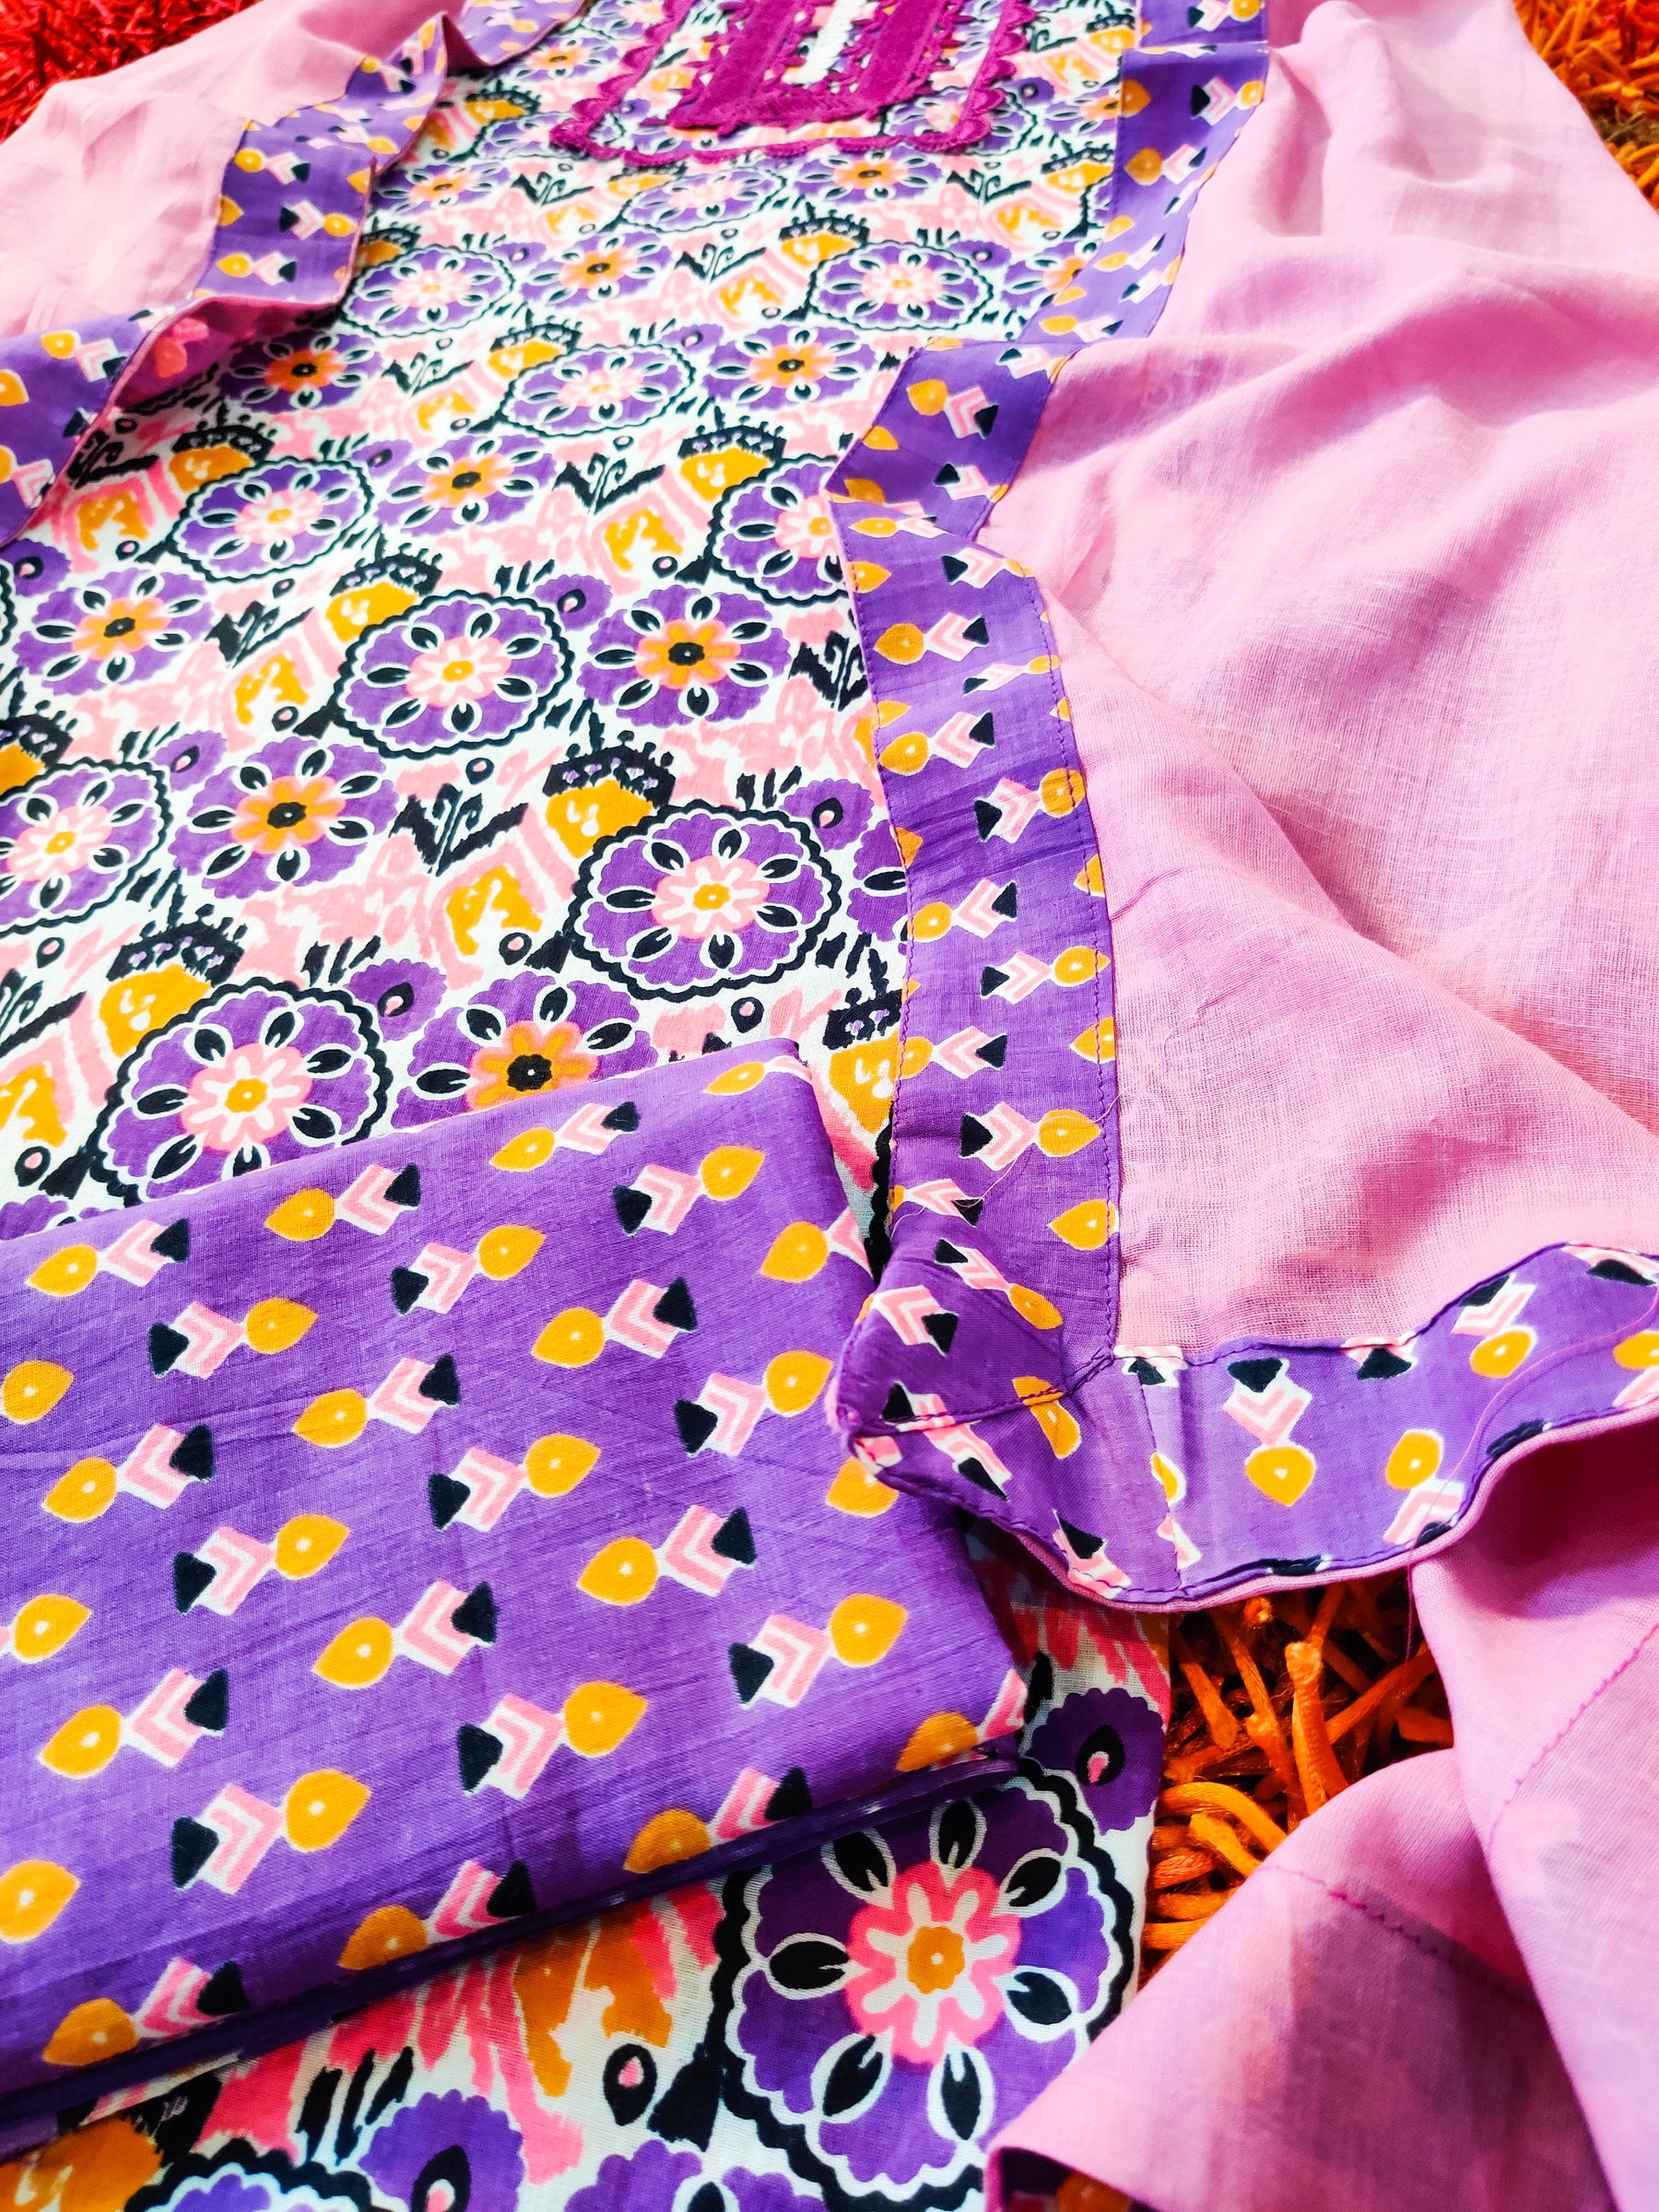 Purple Cotton Unstitched Dress Material Suit Set